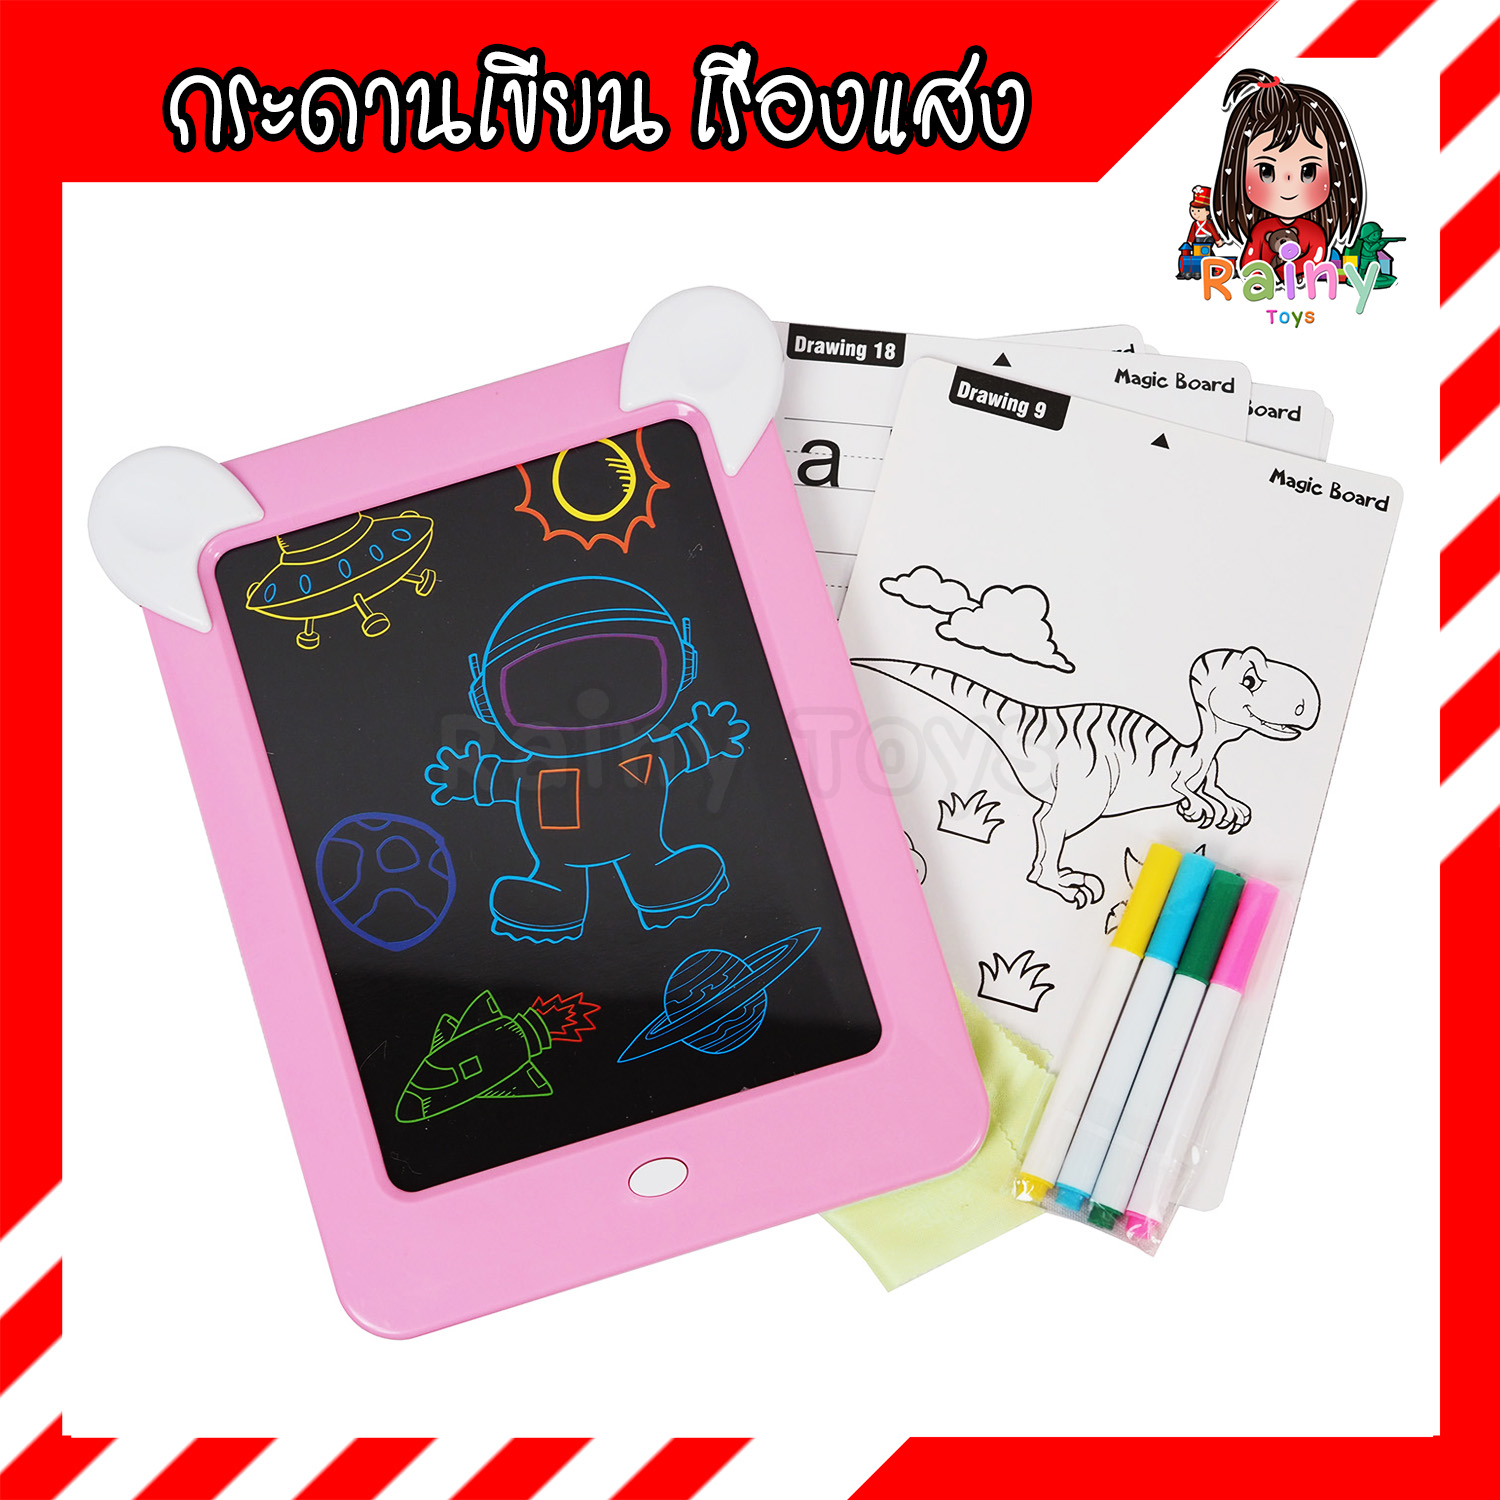 Rainy Toys ของเล่นเด็ก กระดานเขียน เรืองแสง เขียนลบได้ เมจิกไวท์บอร์ด Magic Board (คละสี) มี มอก. กระดานเขียนลบได้ กระดานของเล่น กระดานวาดเขียน